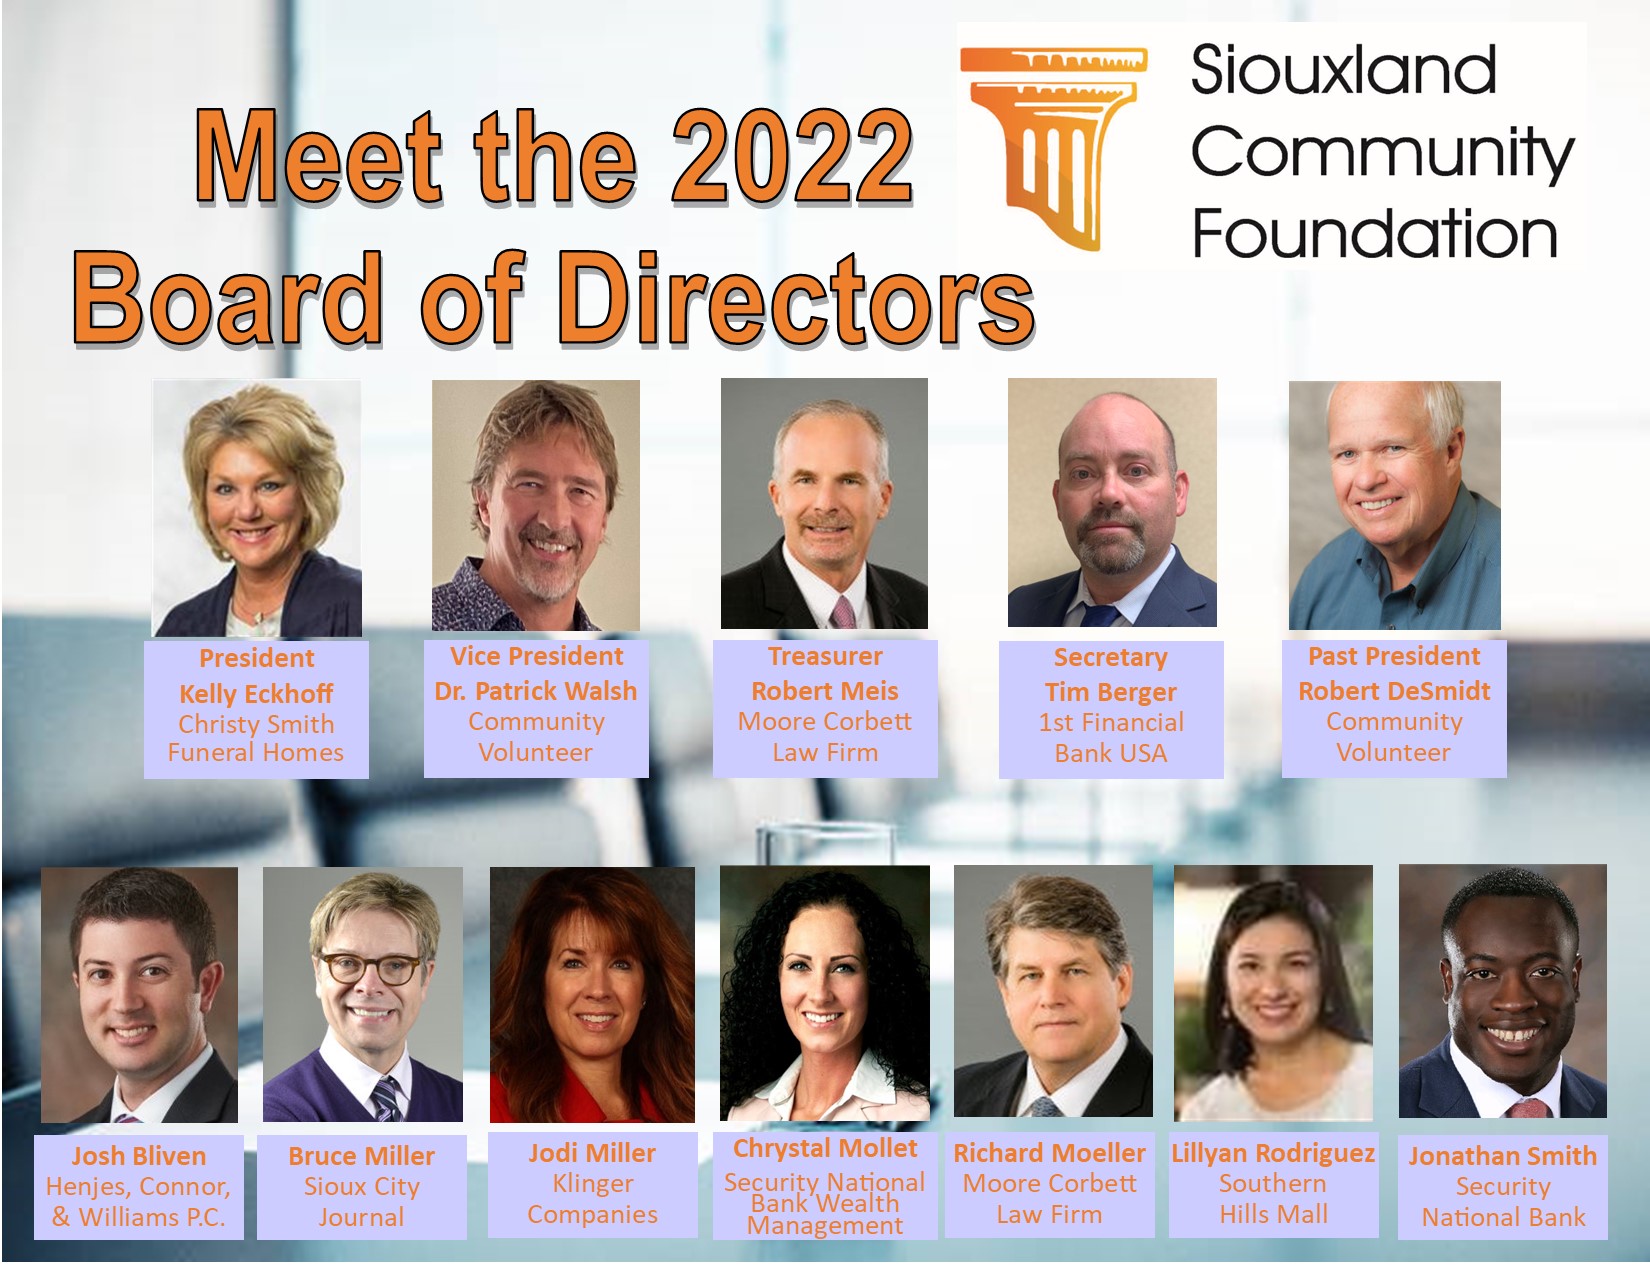 Meet the 2022 SCF Board of Directors Image 1